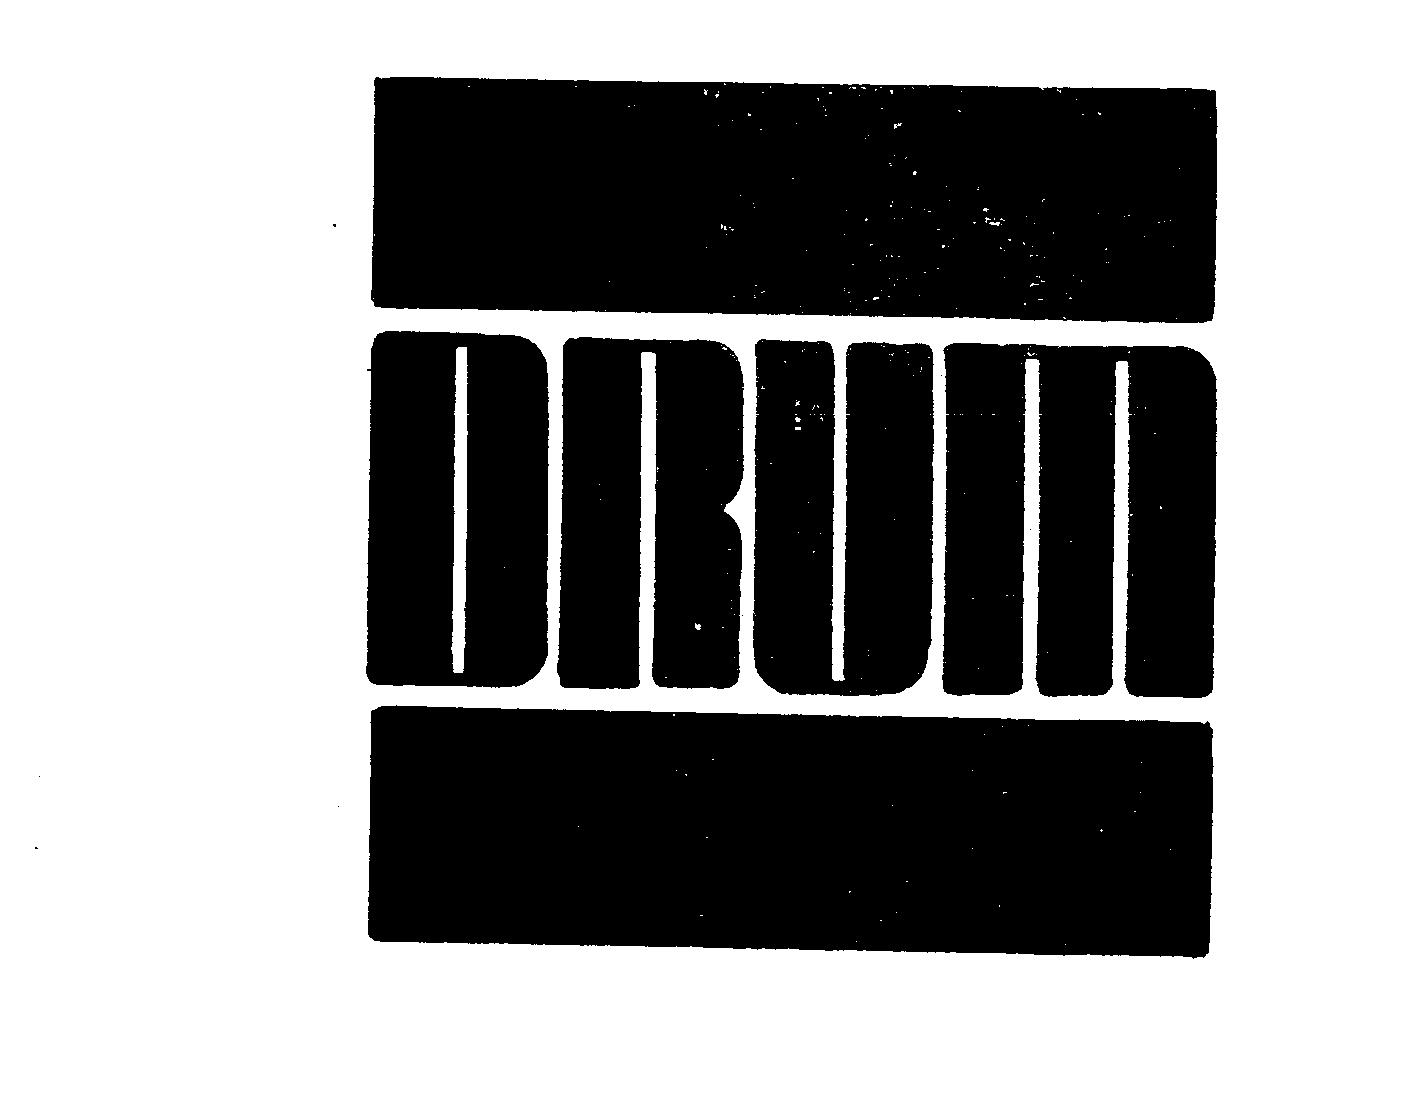 Trademark Logo DRUM